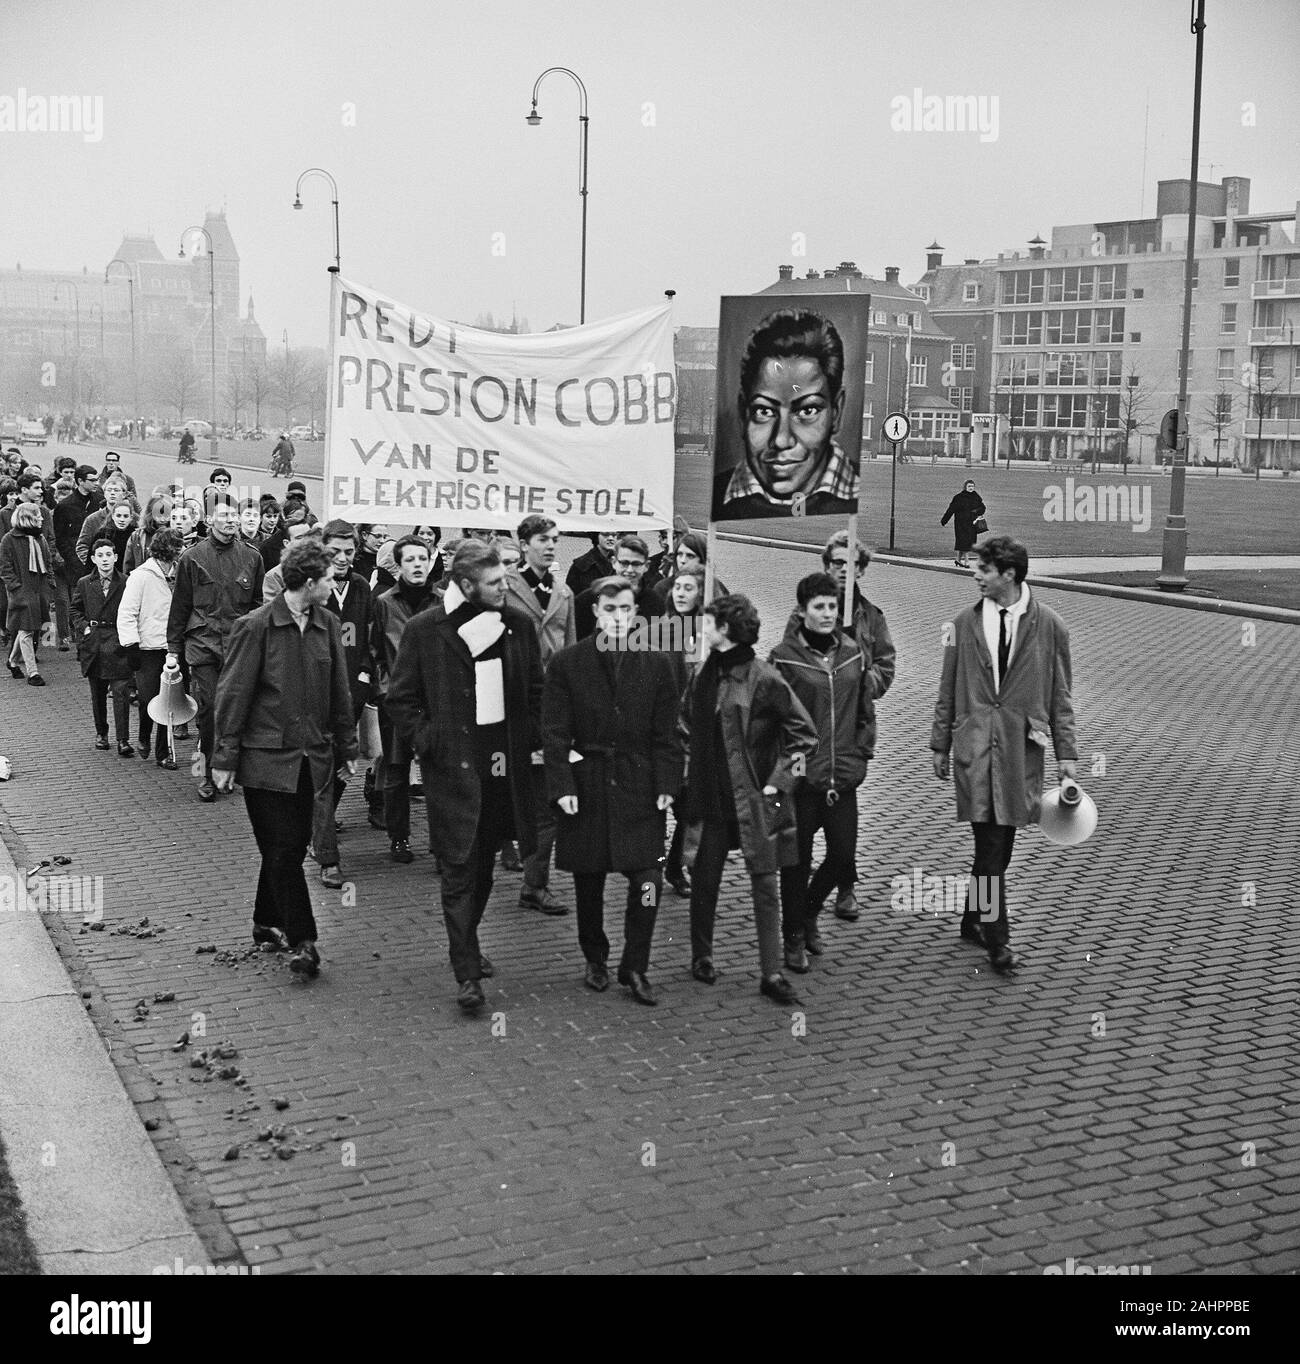 Pays-bas protestation contre la peine de mort pour Preston dans le Cobb USA ca. Années 1960 Banque D'Images